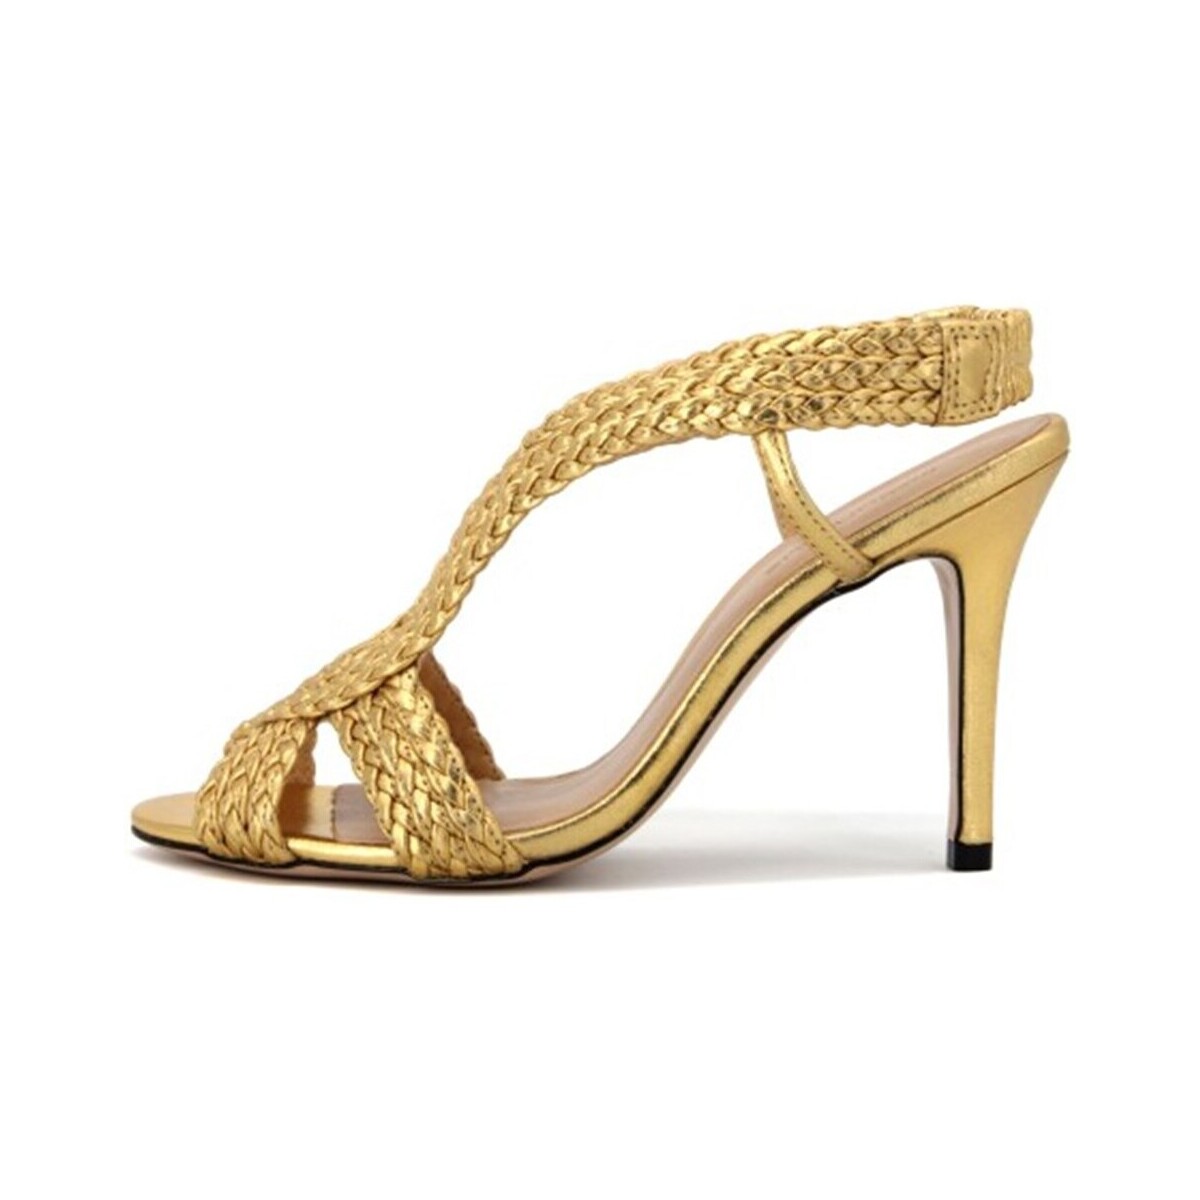 Schuhe Damen Sandalen / Sandaletten Cecil 52950 Gold